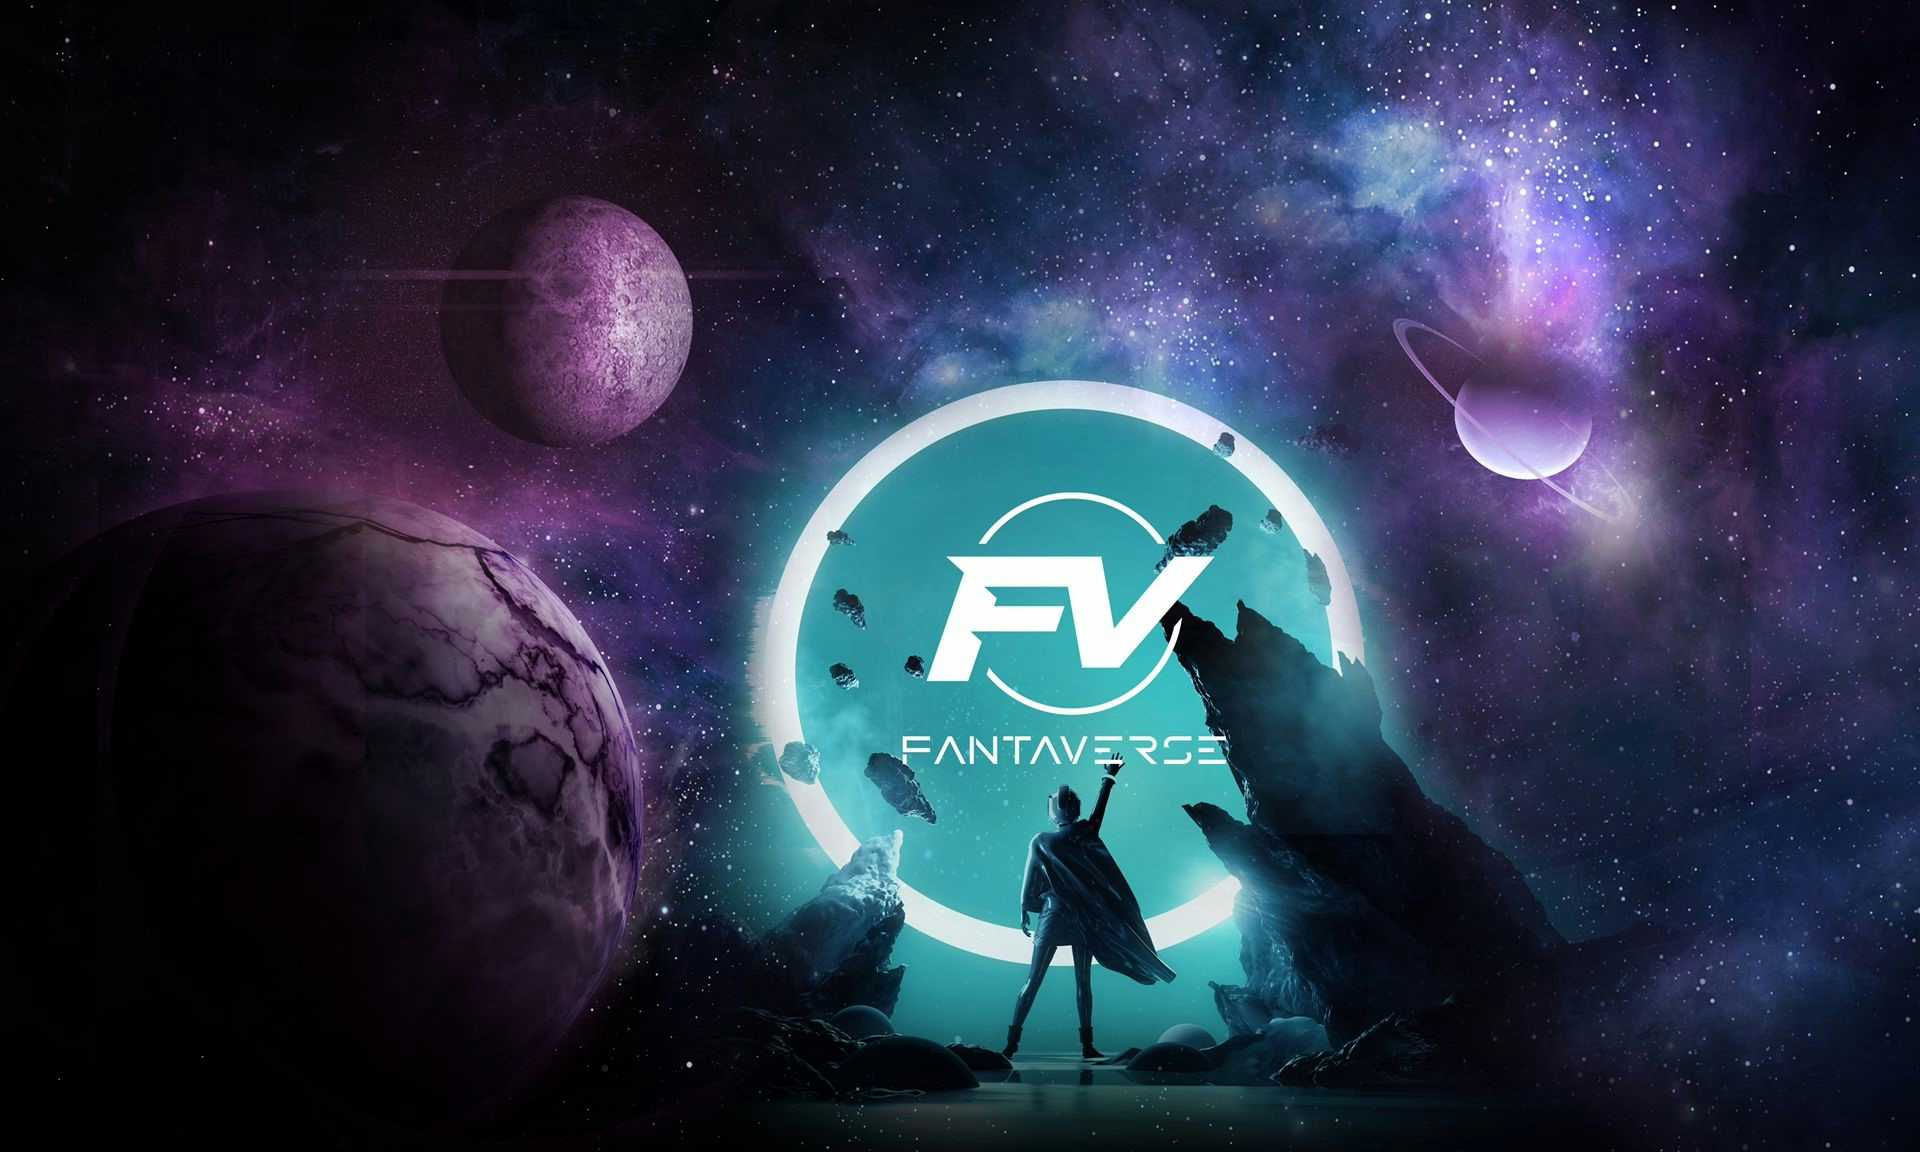 background image of FantaVerse